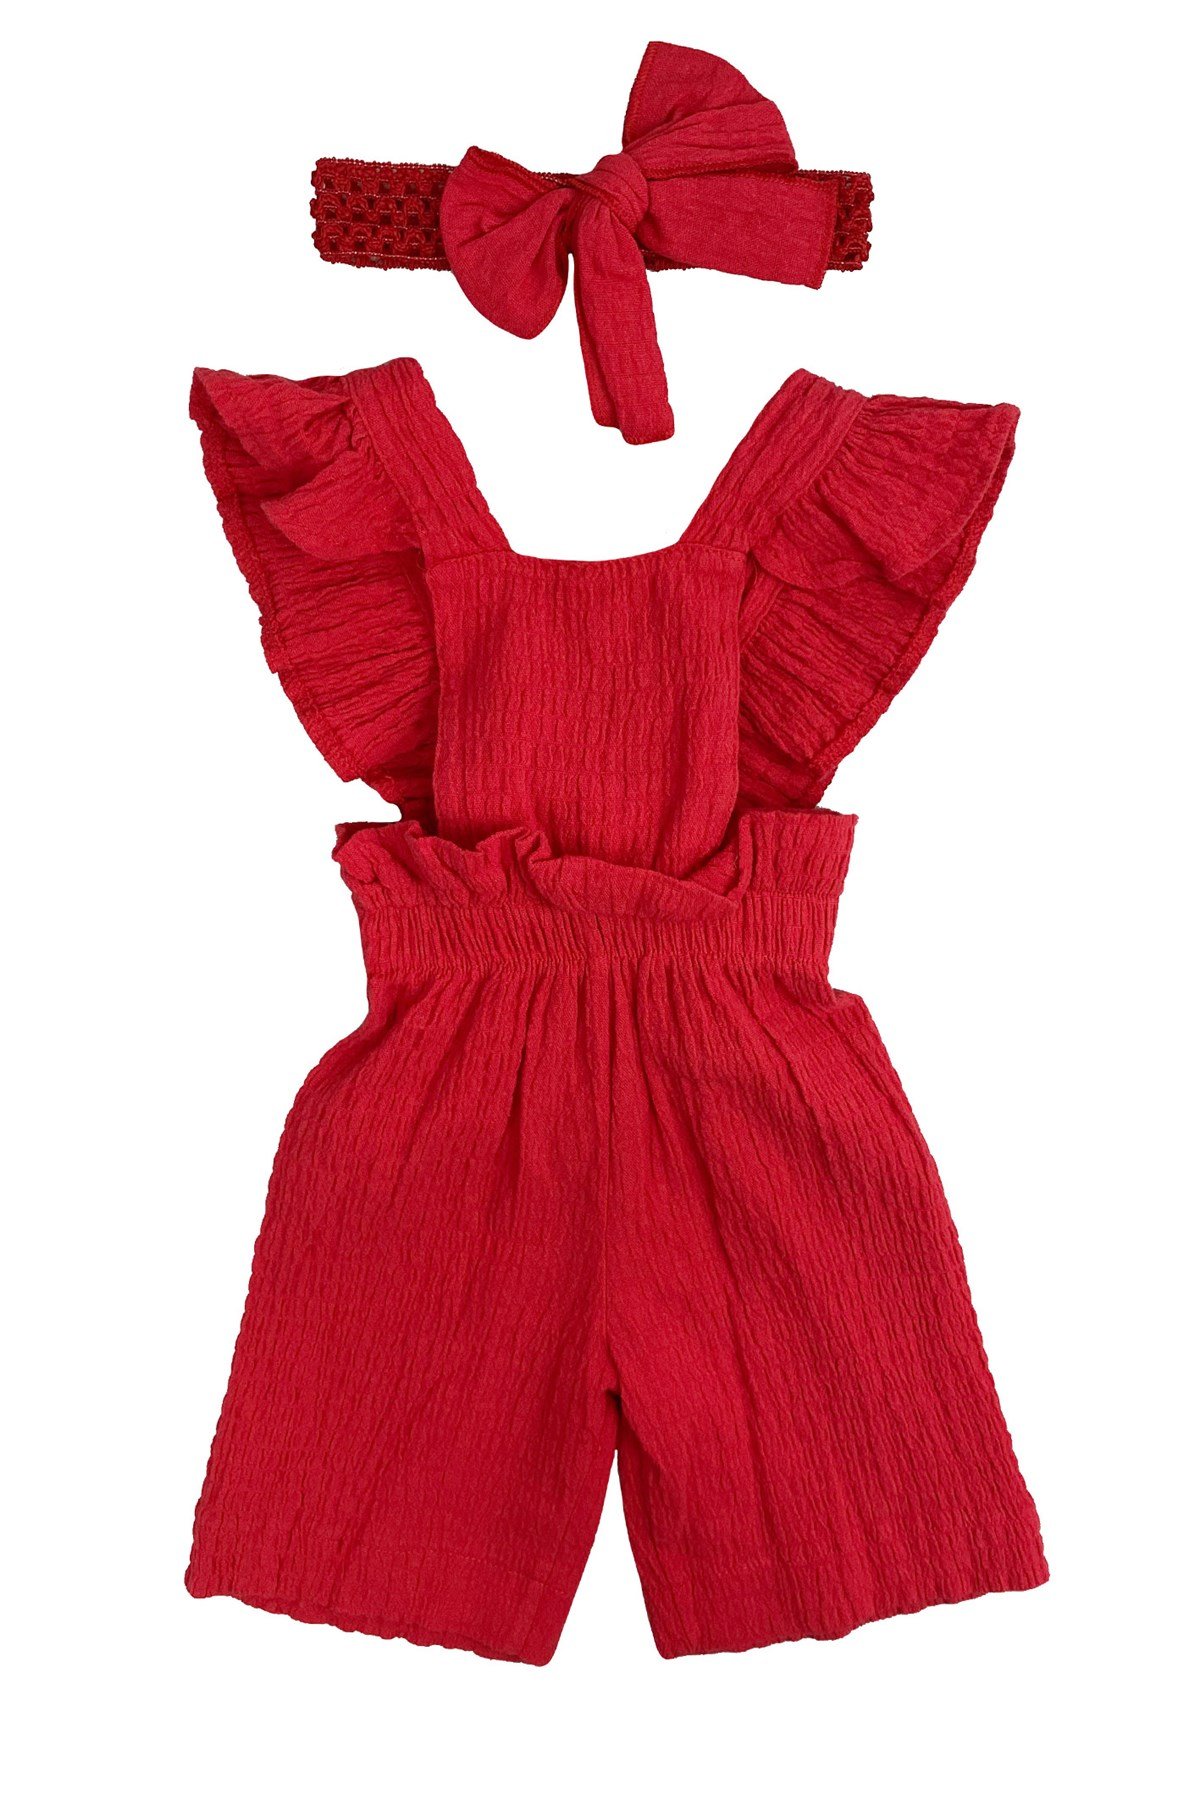 Bandanalı Kız Bebek Tulum Salopet Kırmızı | hansbebe